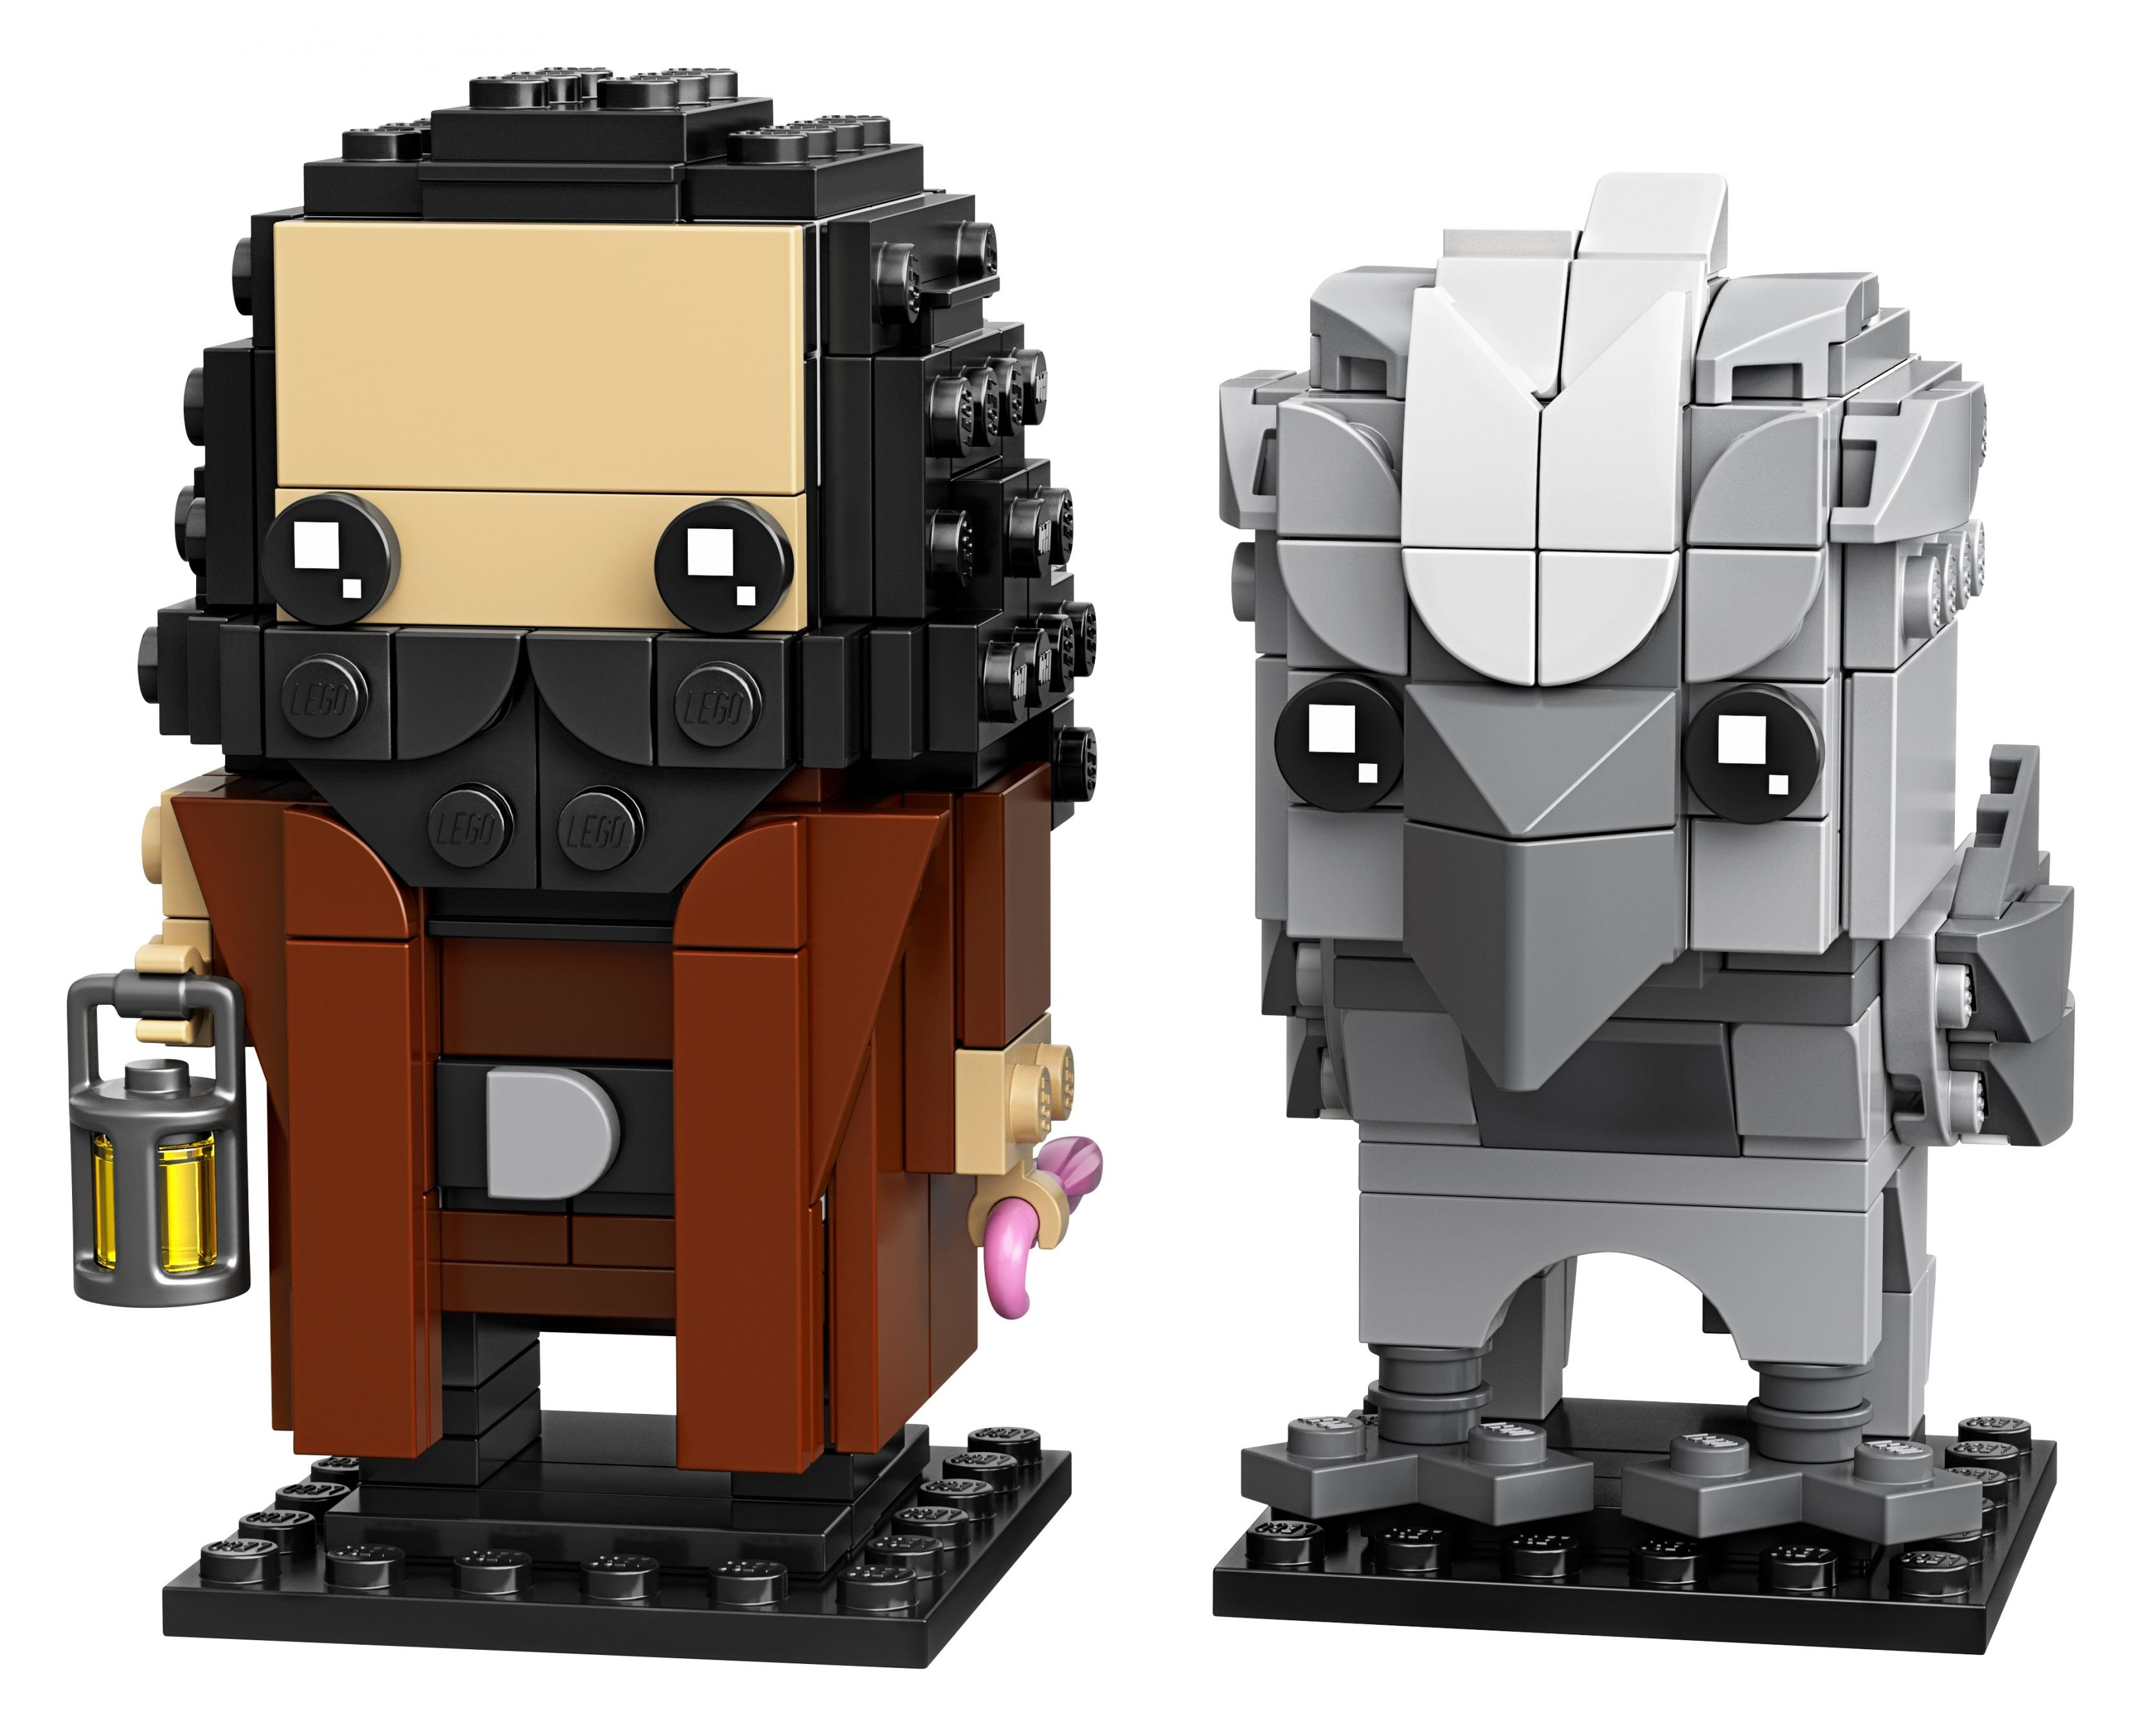 Brickheadz Bausatz Hagrid™ Seidenschnabel LEGO 40412 und